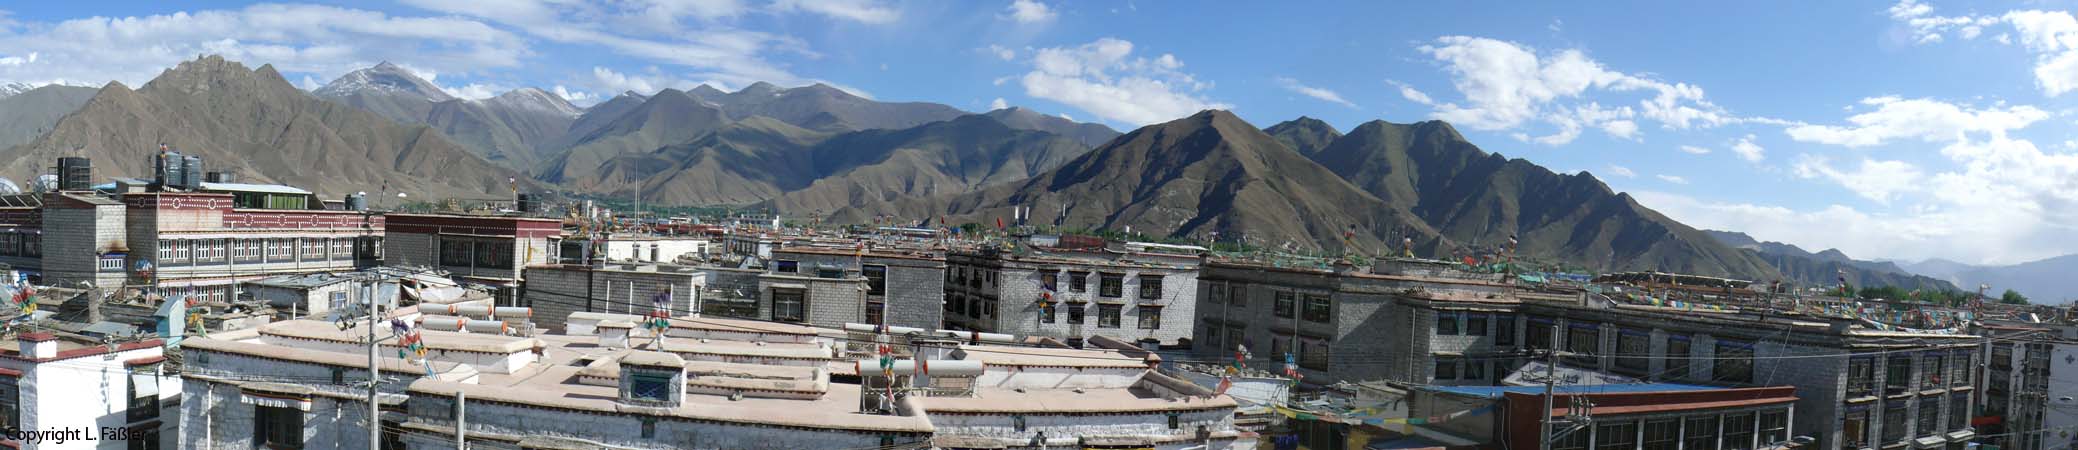 17_Lhasa_Altstadtdaecher_Panorama